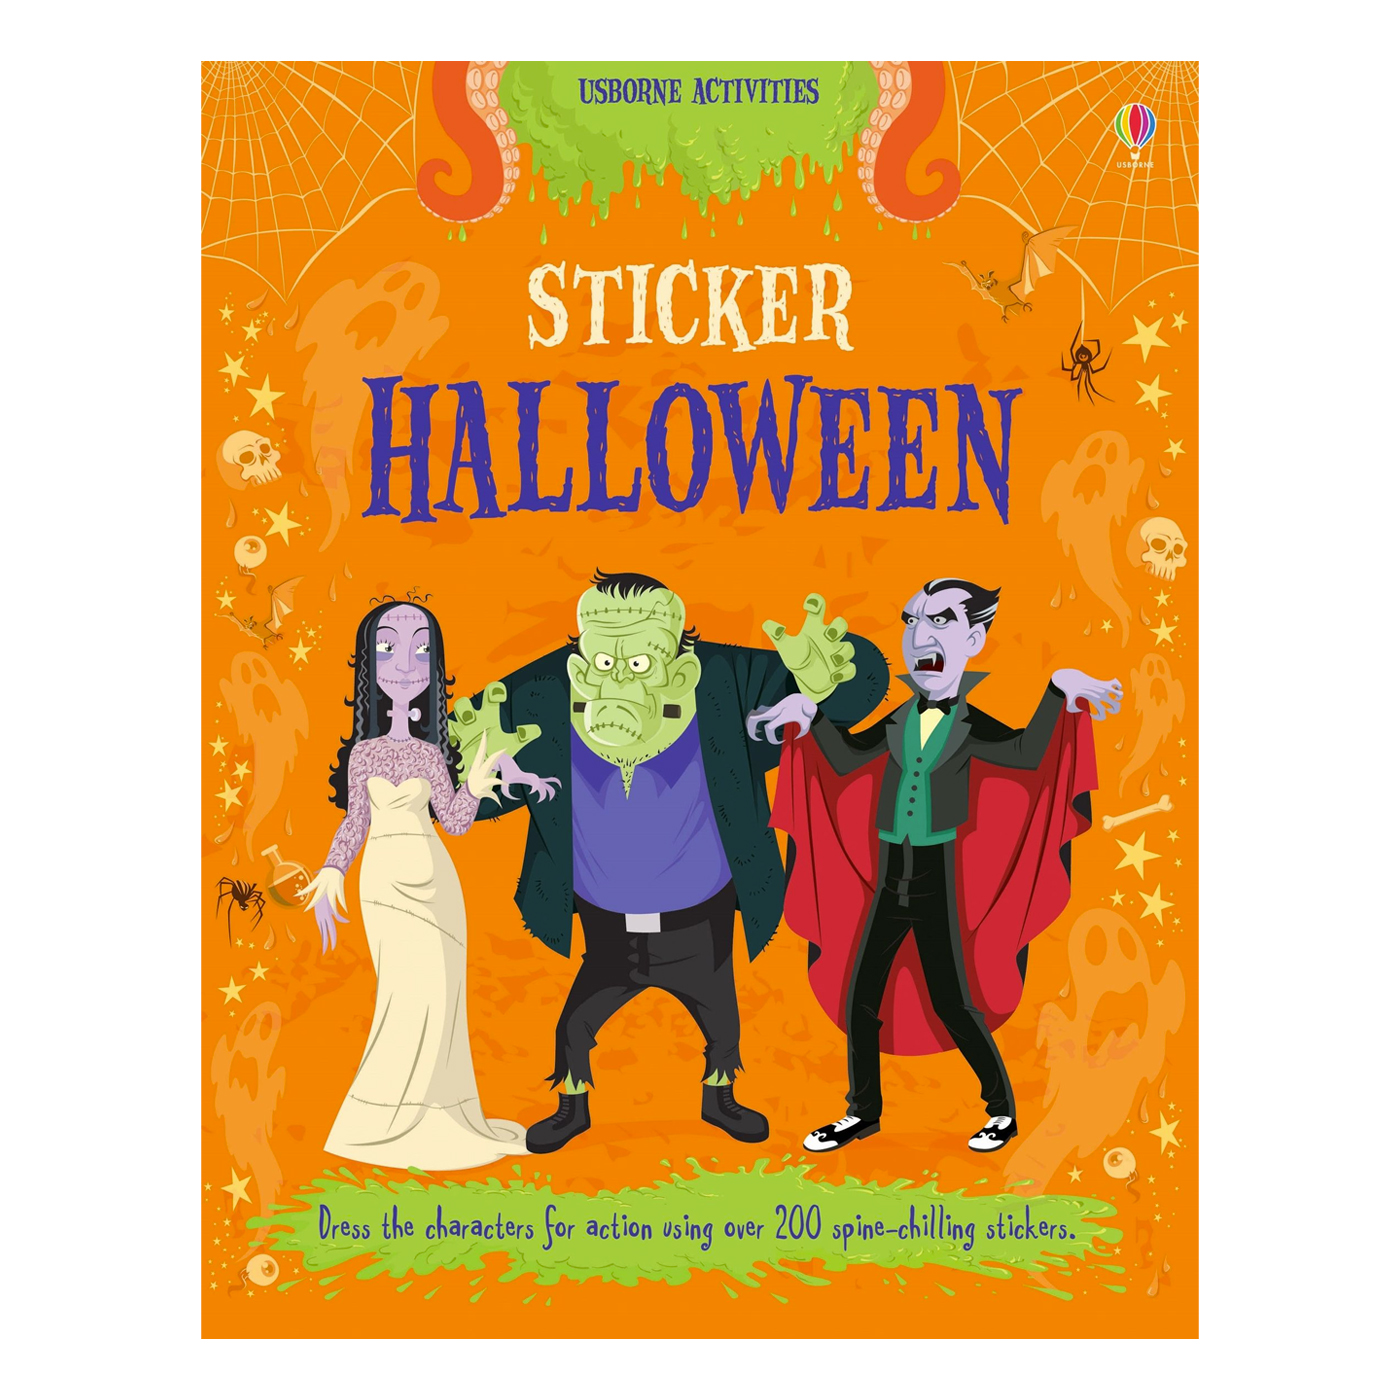 USBORNE Sticker Halloween